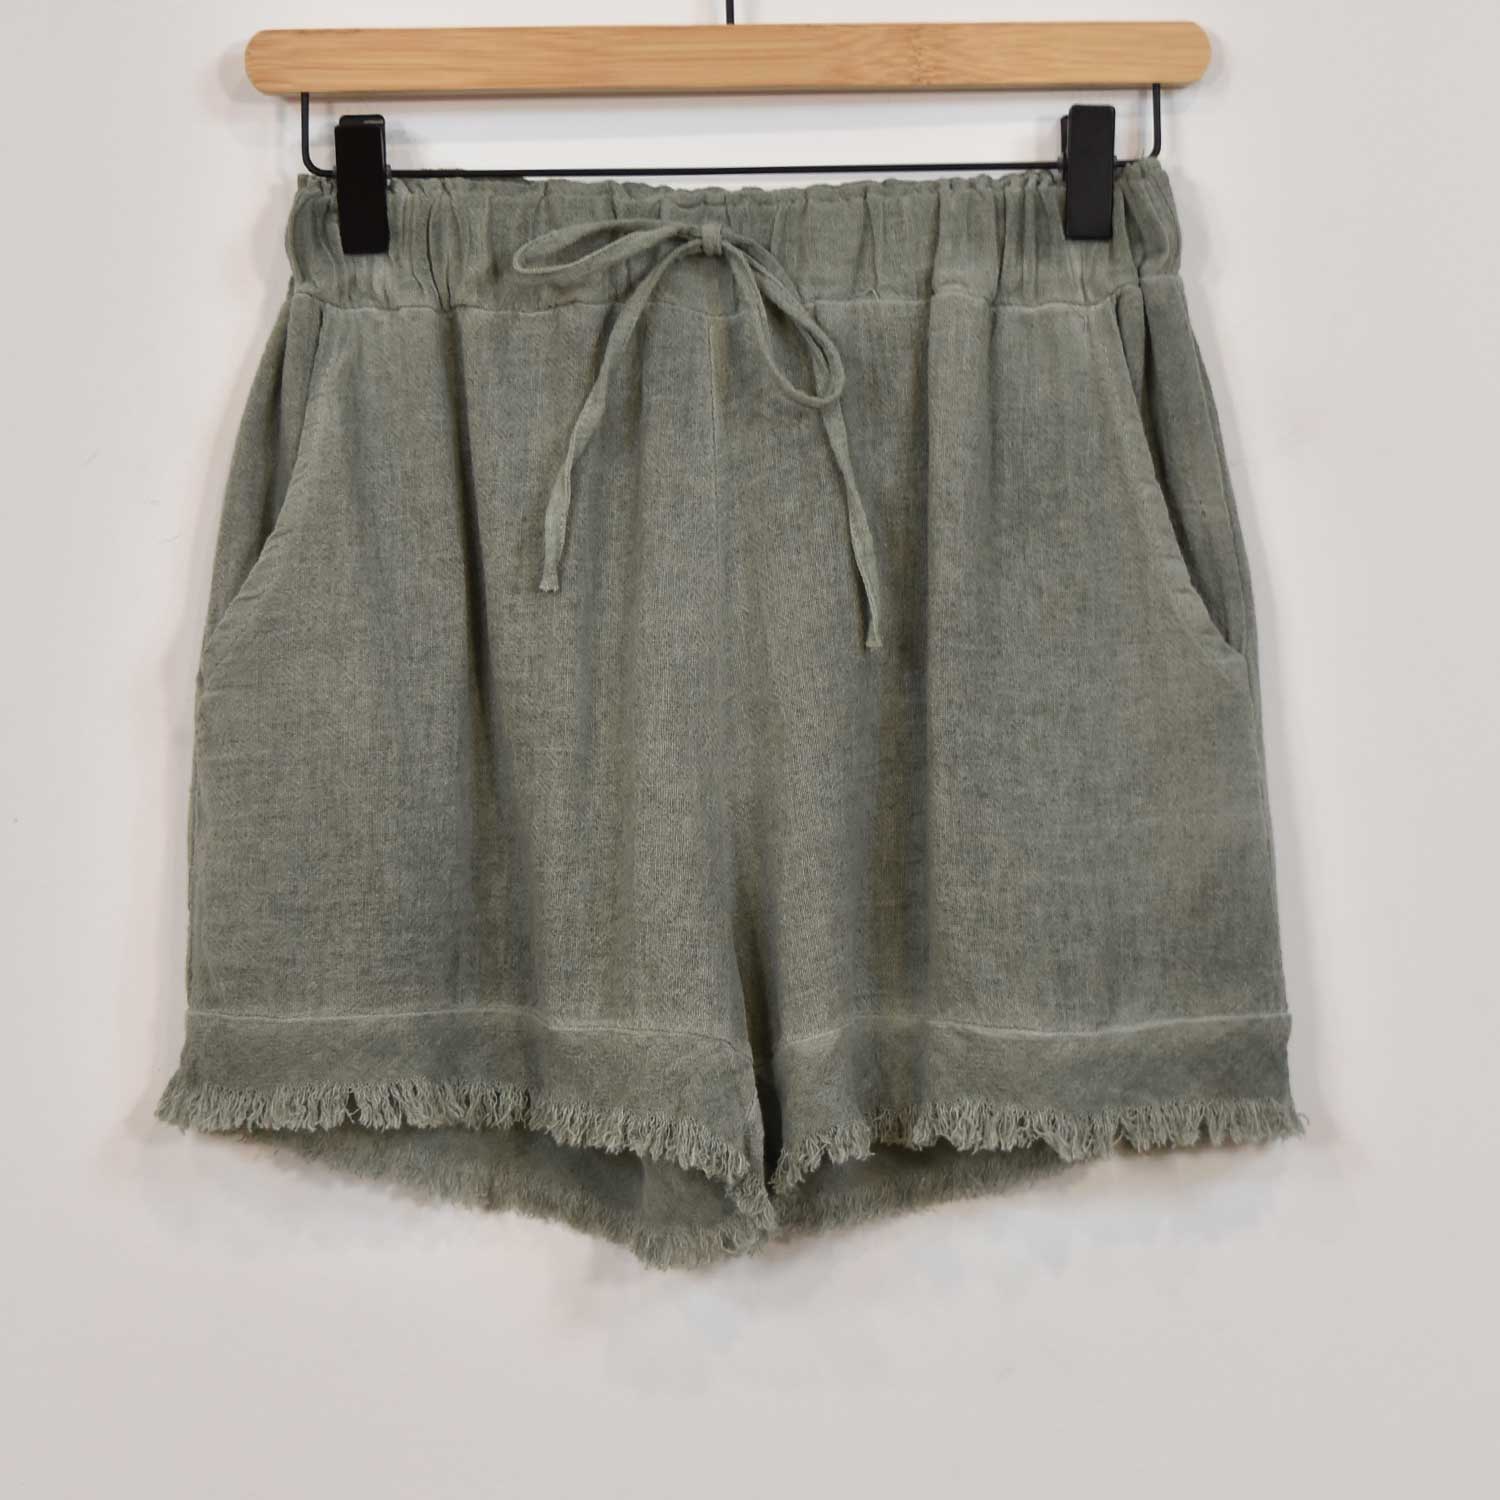 Khaki frayed shorts